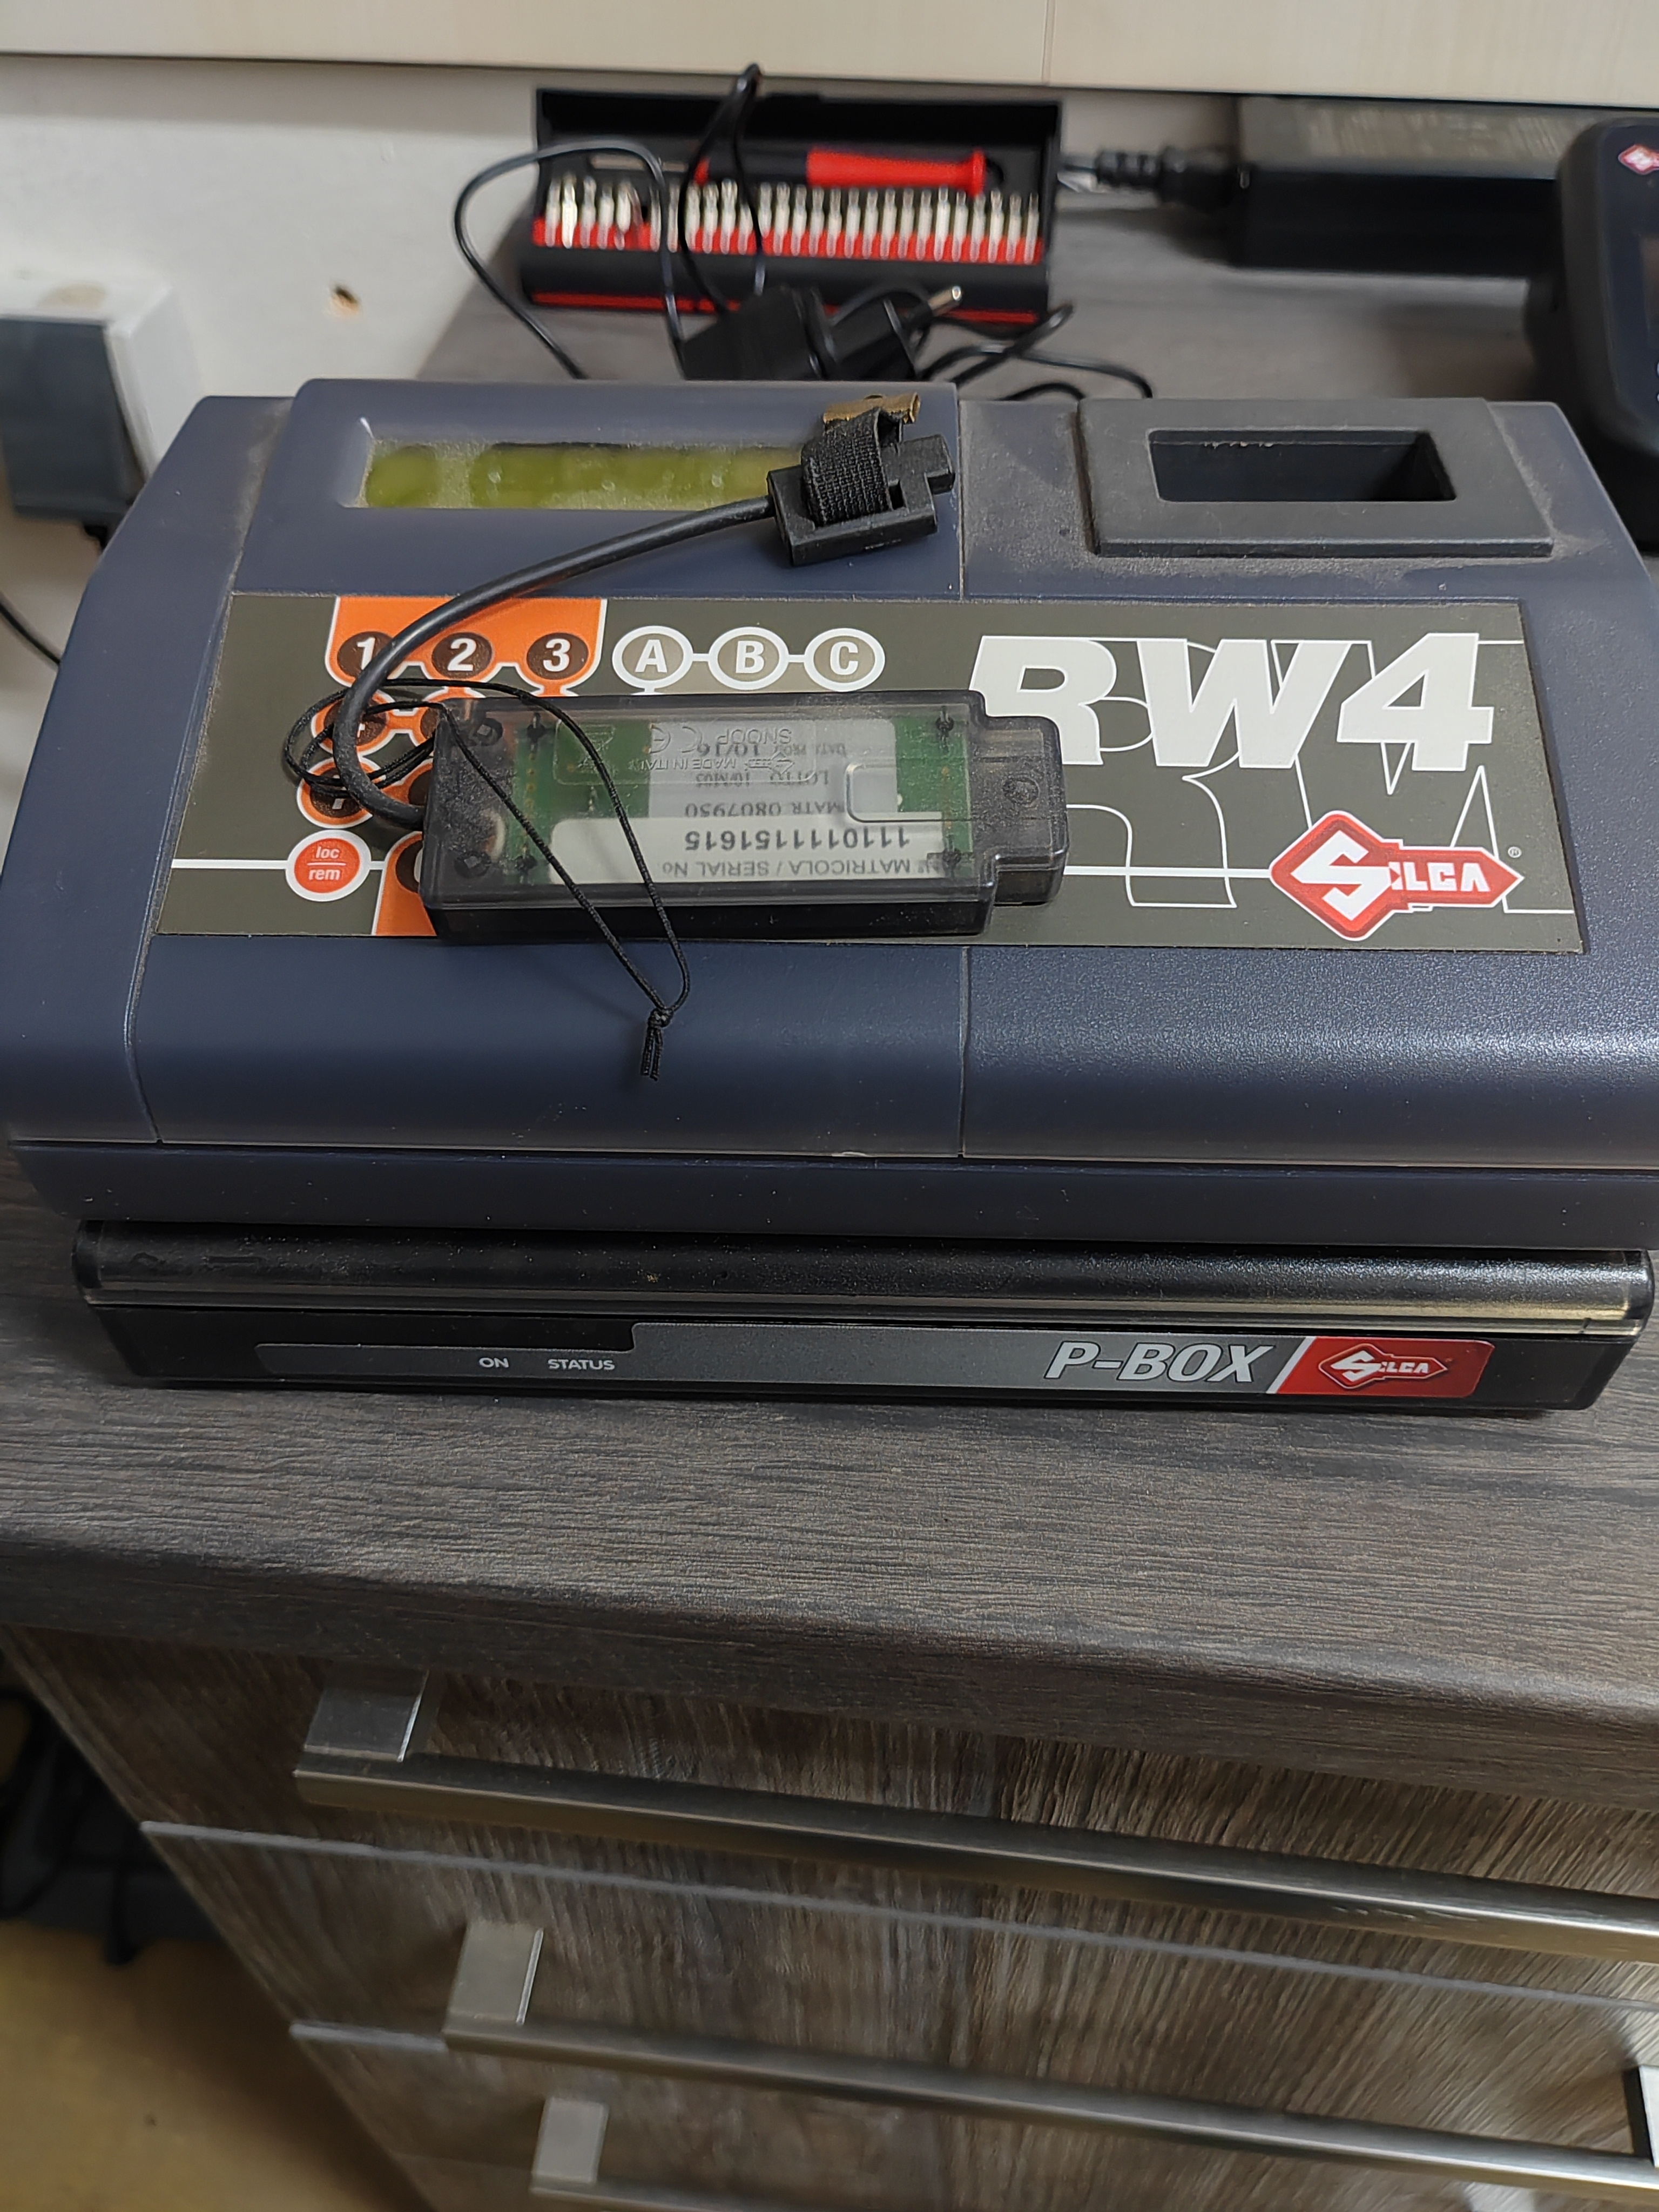 RW4 + P-BOX